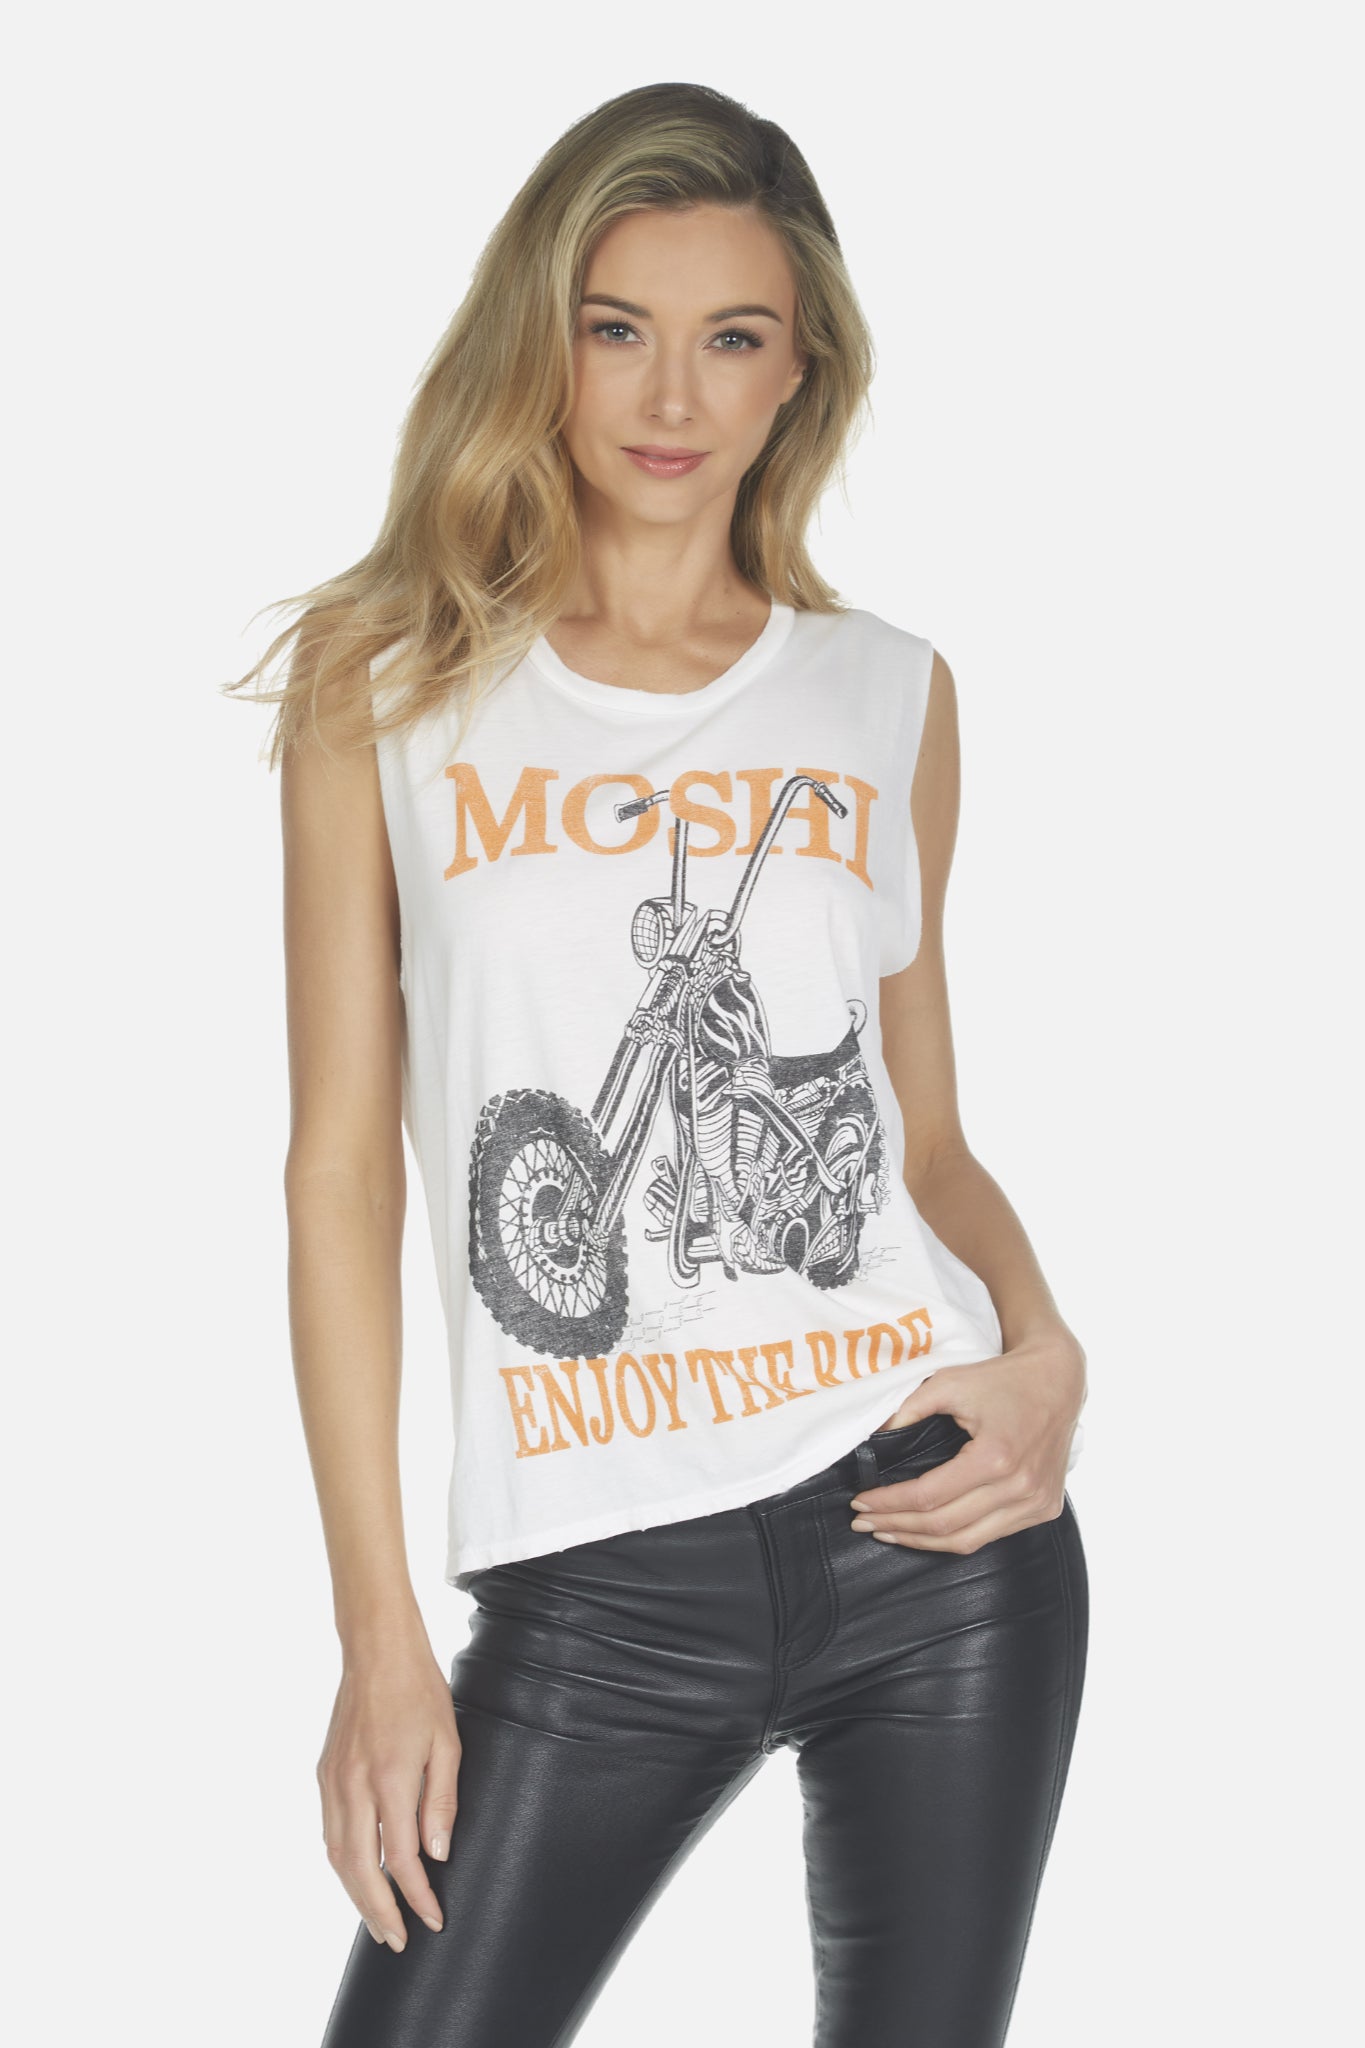 Kel Moshi Motorcycle Tank